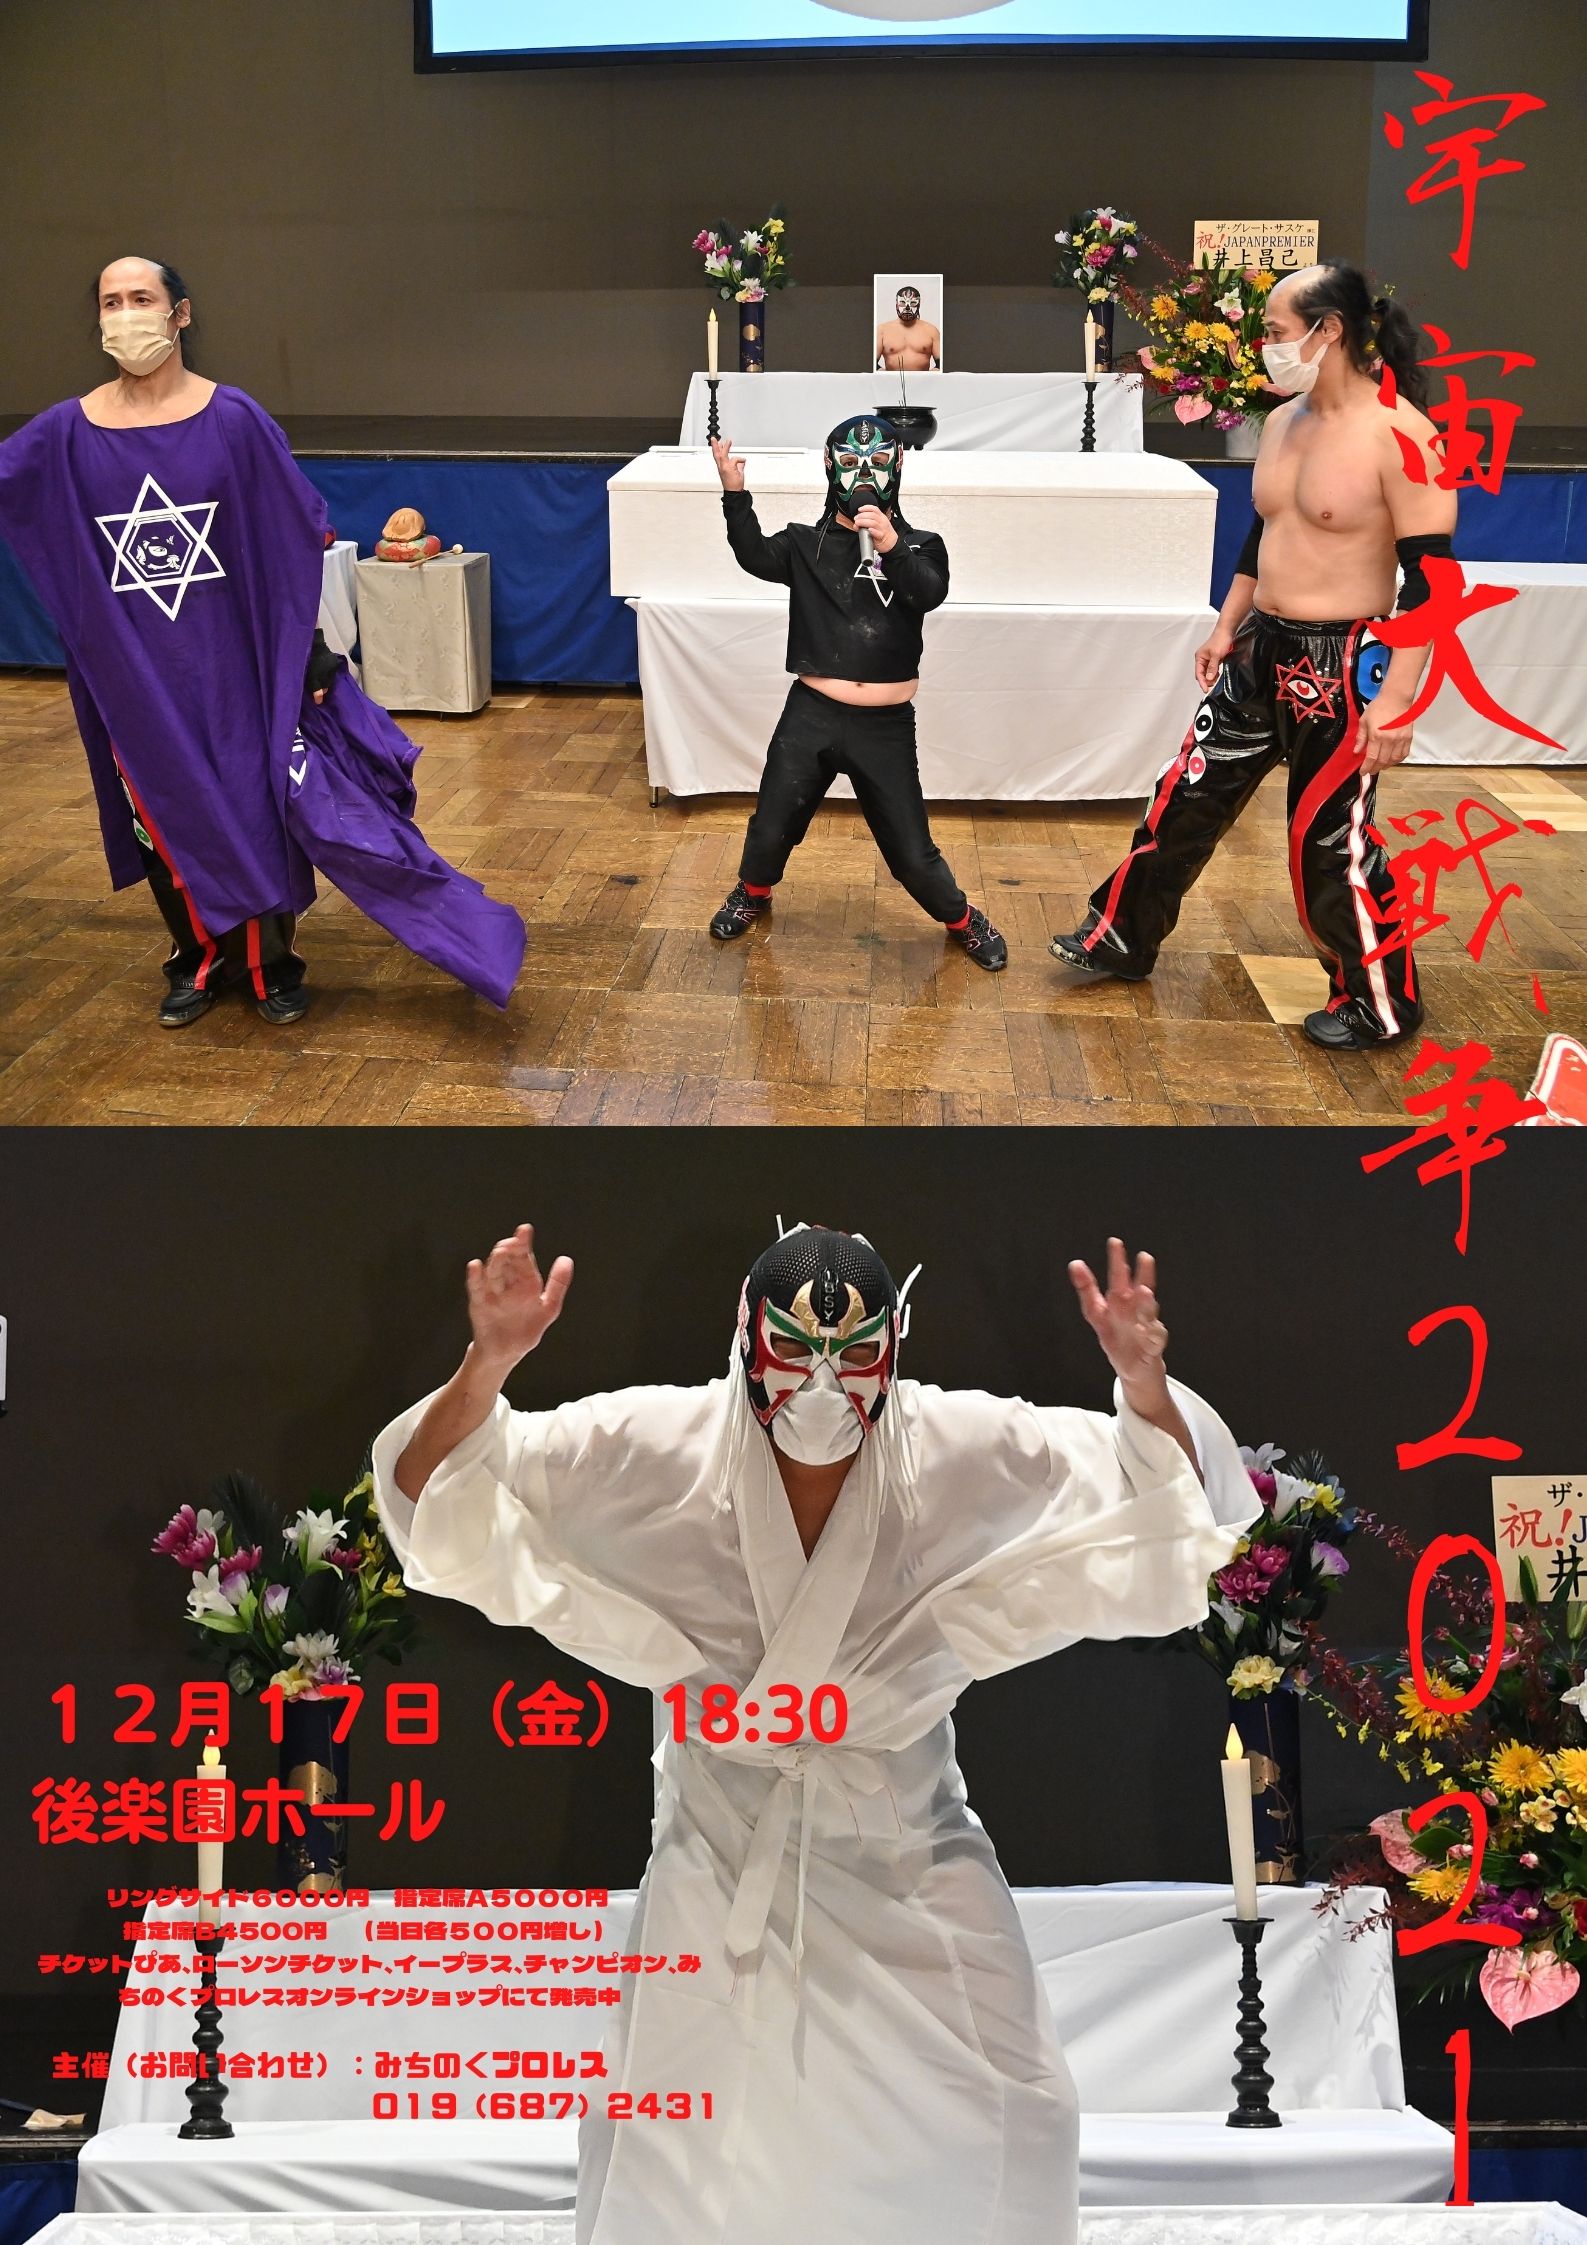 みちのくプロレス Michinoku Pro Wrestling 公式 １名なら良い席取れちゃうかも T Co Z3frkhwc7e Twitter